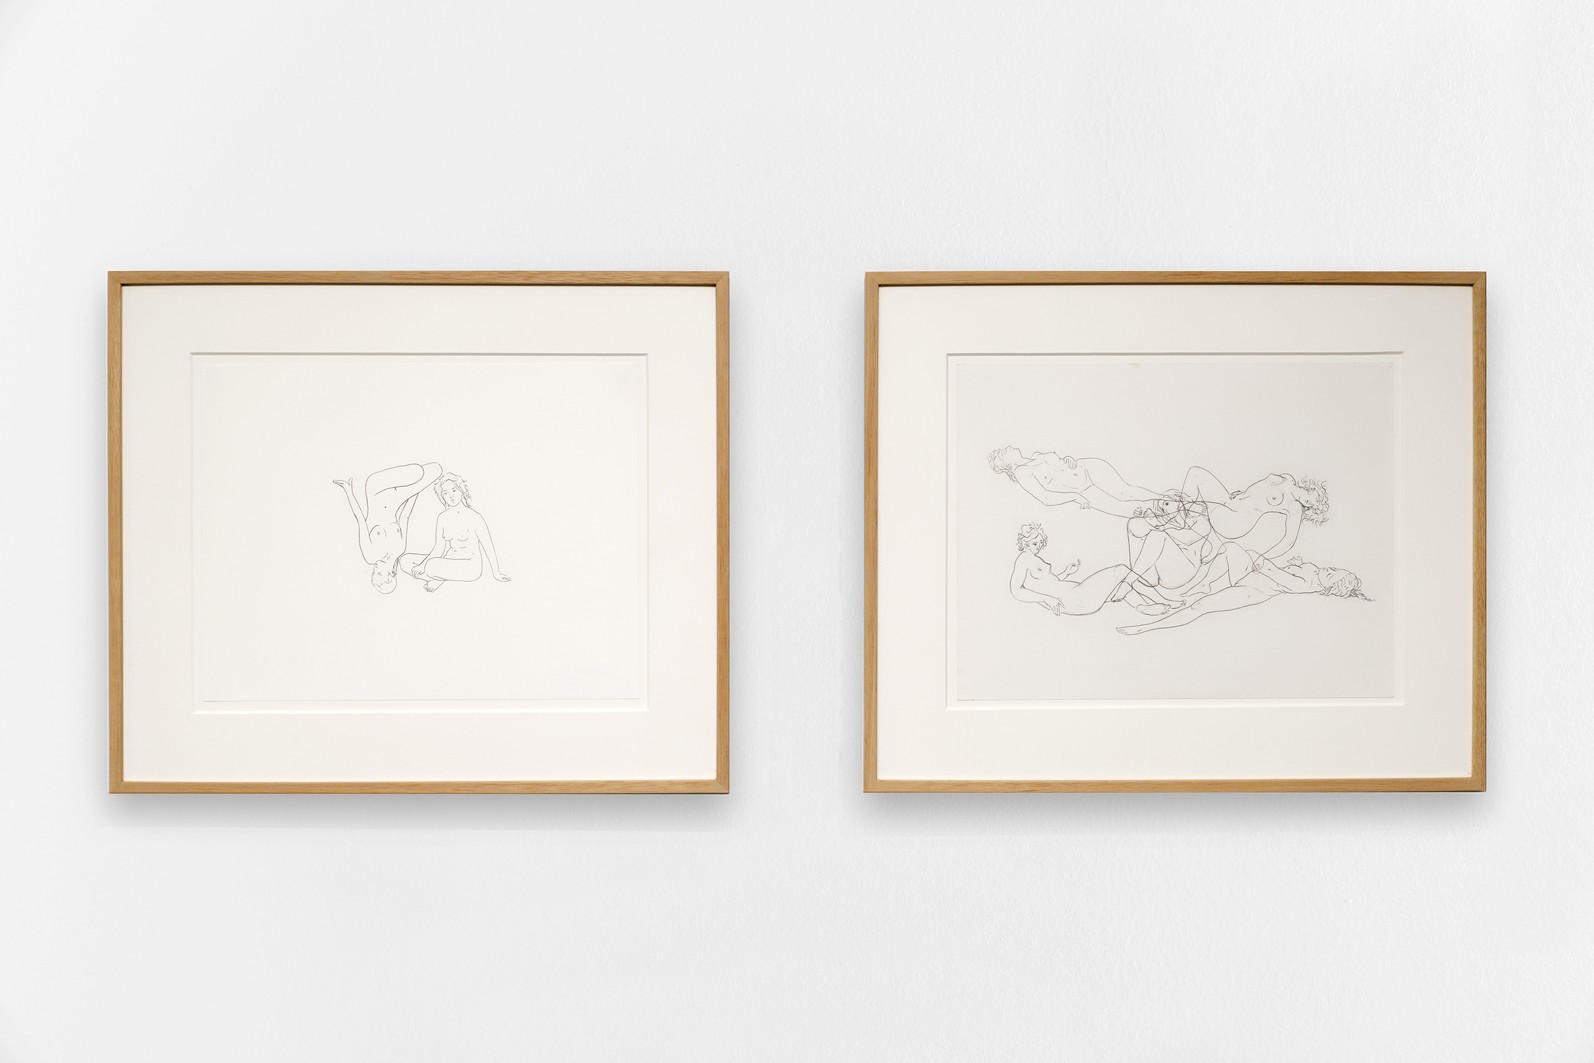 On the left: *The Female Gaze .03*, 2021, drawing on paper, 37 x 45 cm. On the right: *The Female Gaze .01*, 2021, drawing on paper, 37 x 45 cm.
Courtesy the artist & Spiaggia Libera, Paris. © Aurélien Mole